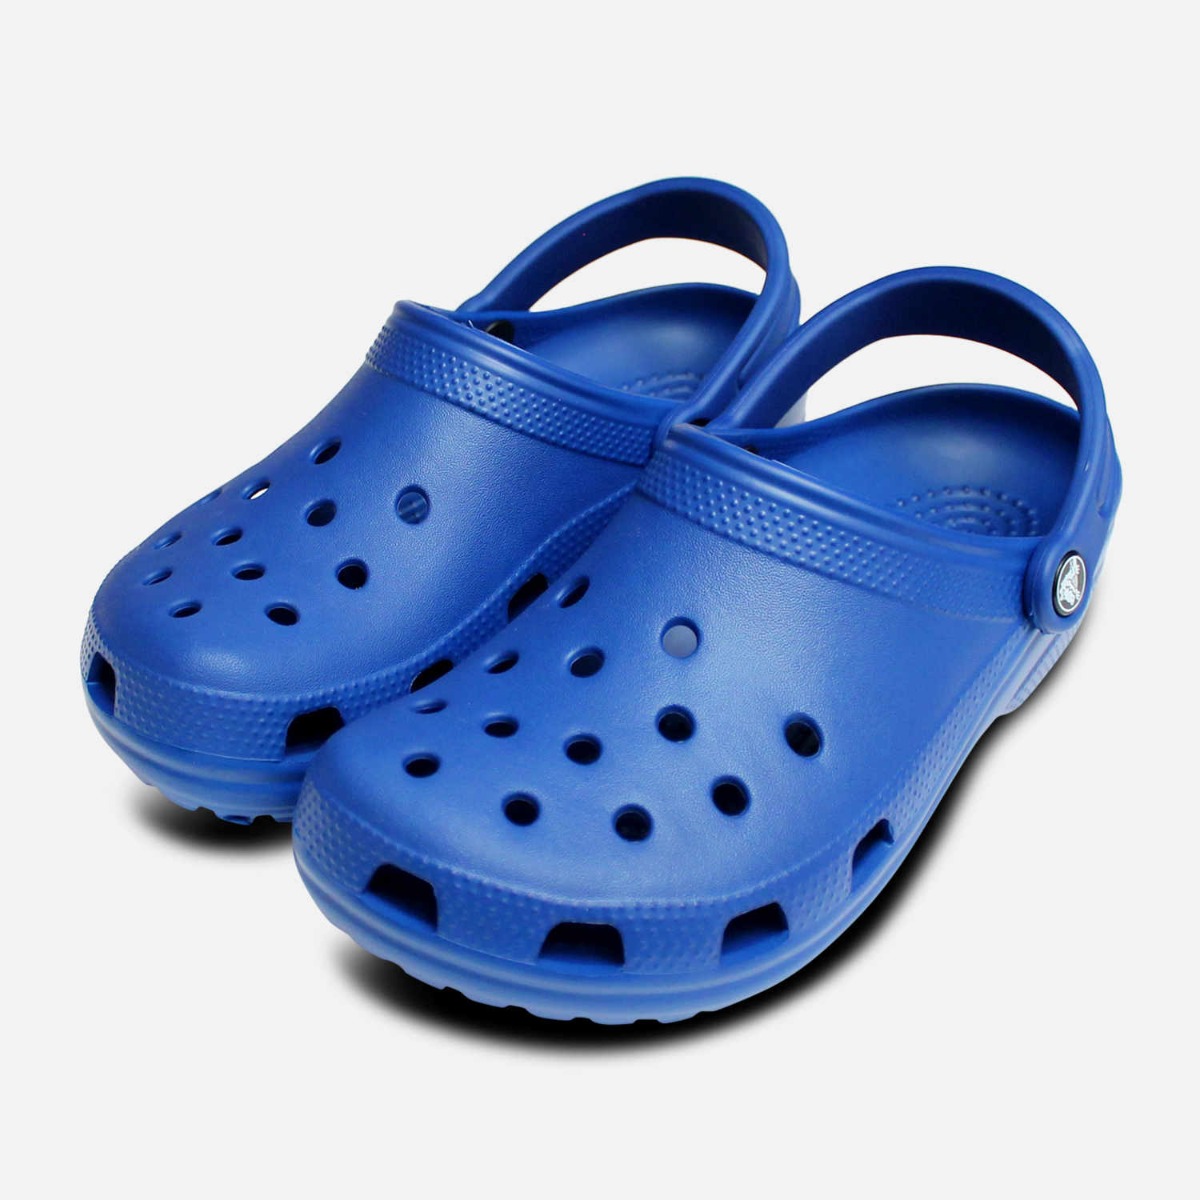 crocs blue jean color